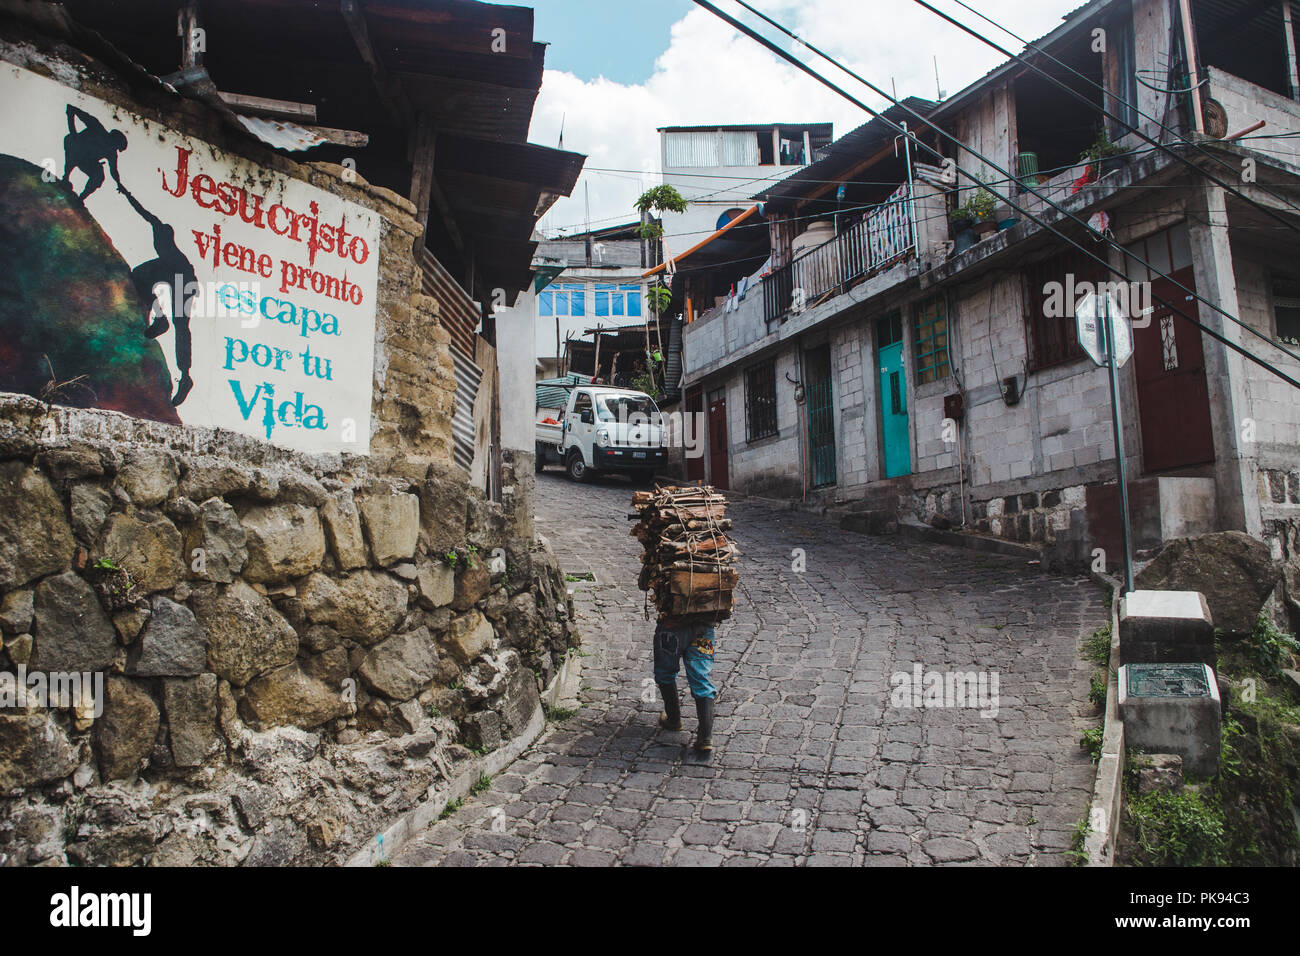 Arbeiter trägt schwere Last von Holz auf dem Rücken auf einem Hügel in Guatemala, vorbei an einem Schild mit der Aufschrift: "Jesus Christus kommt bald, durch dein Leben Escape' Stockfoto